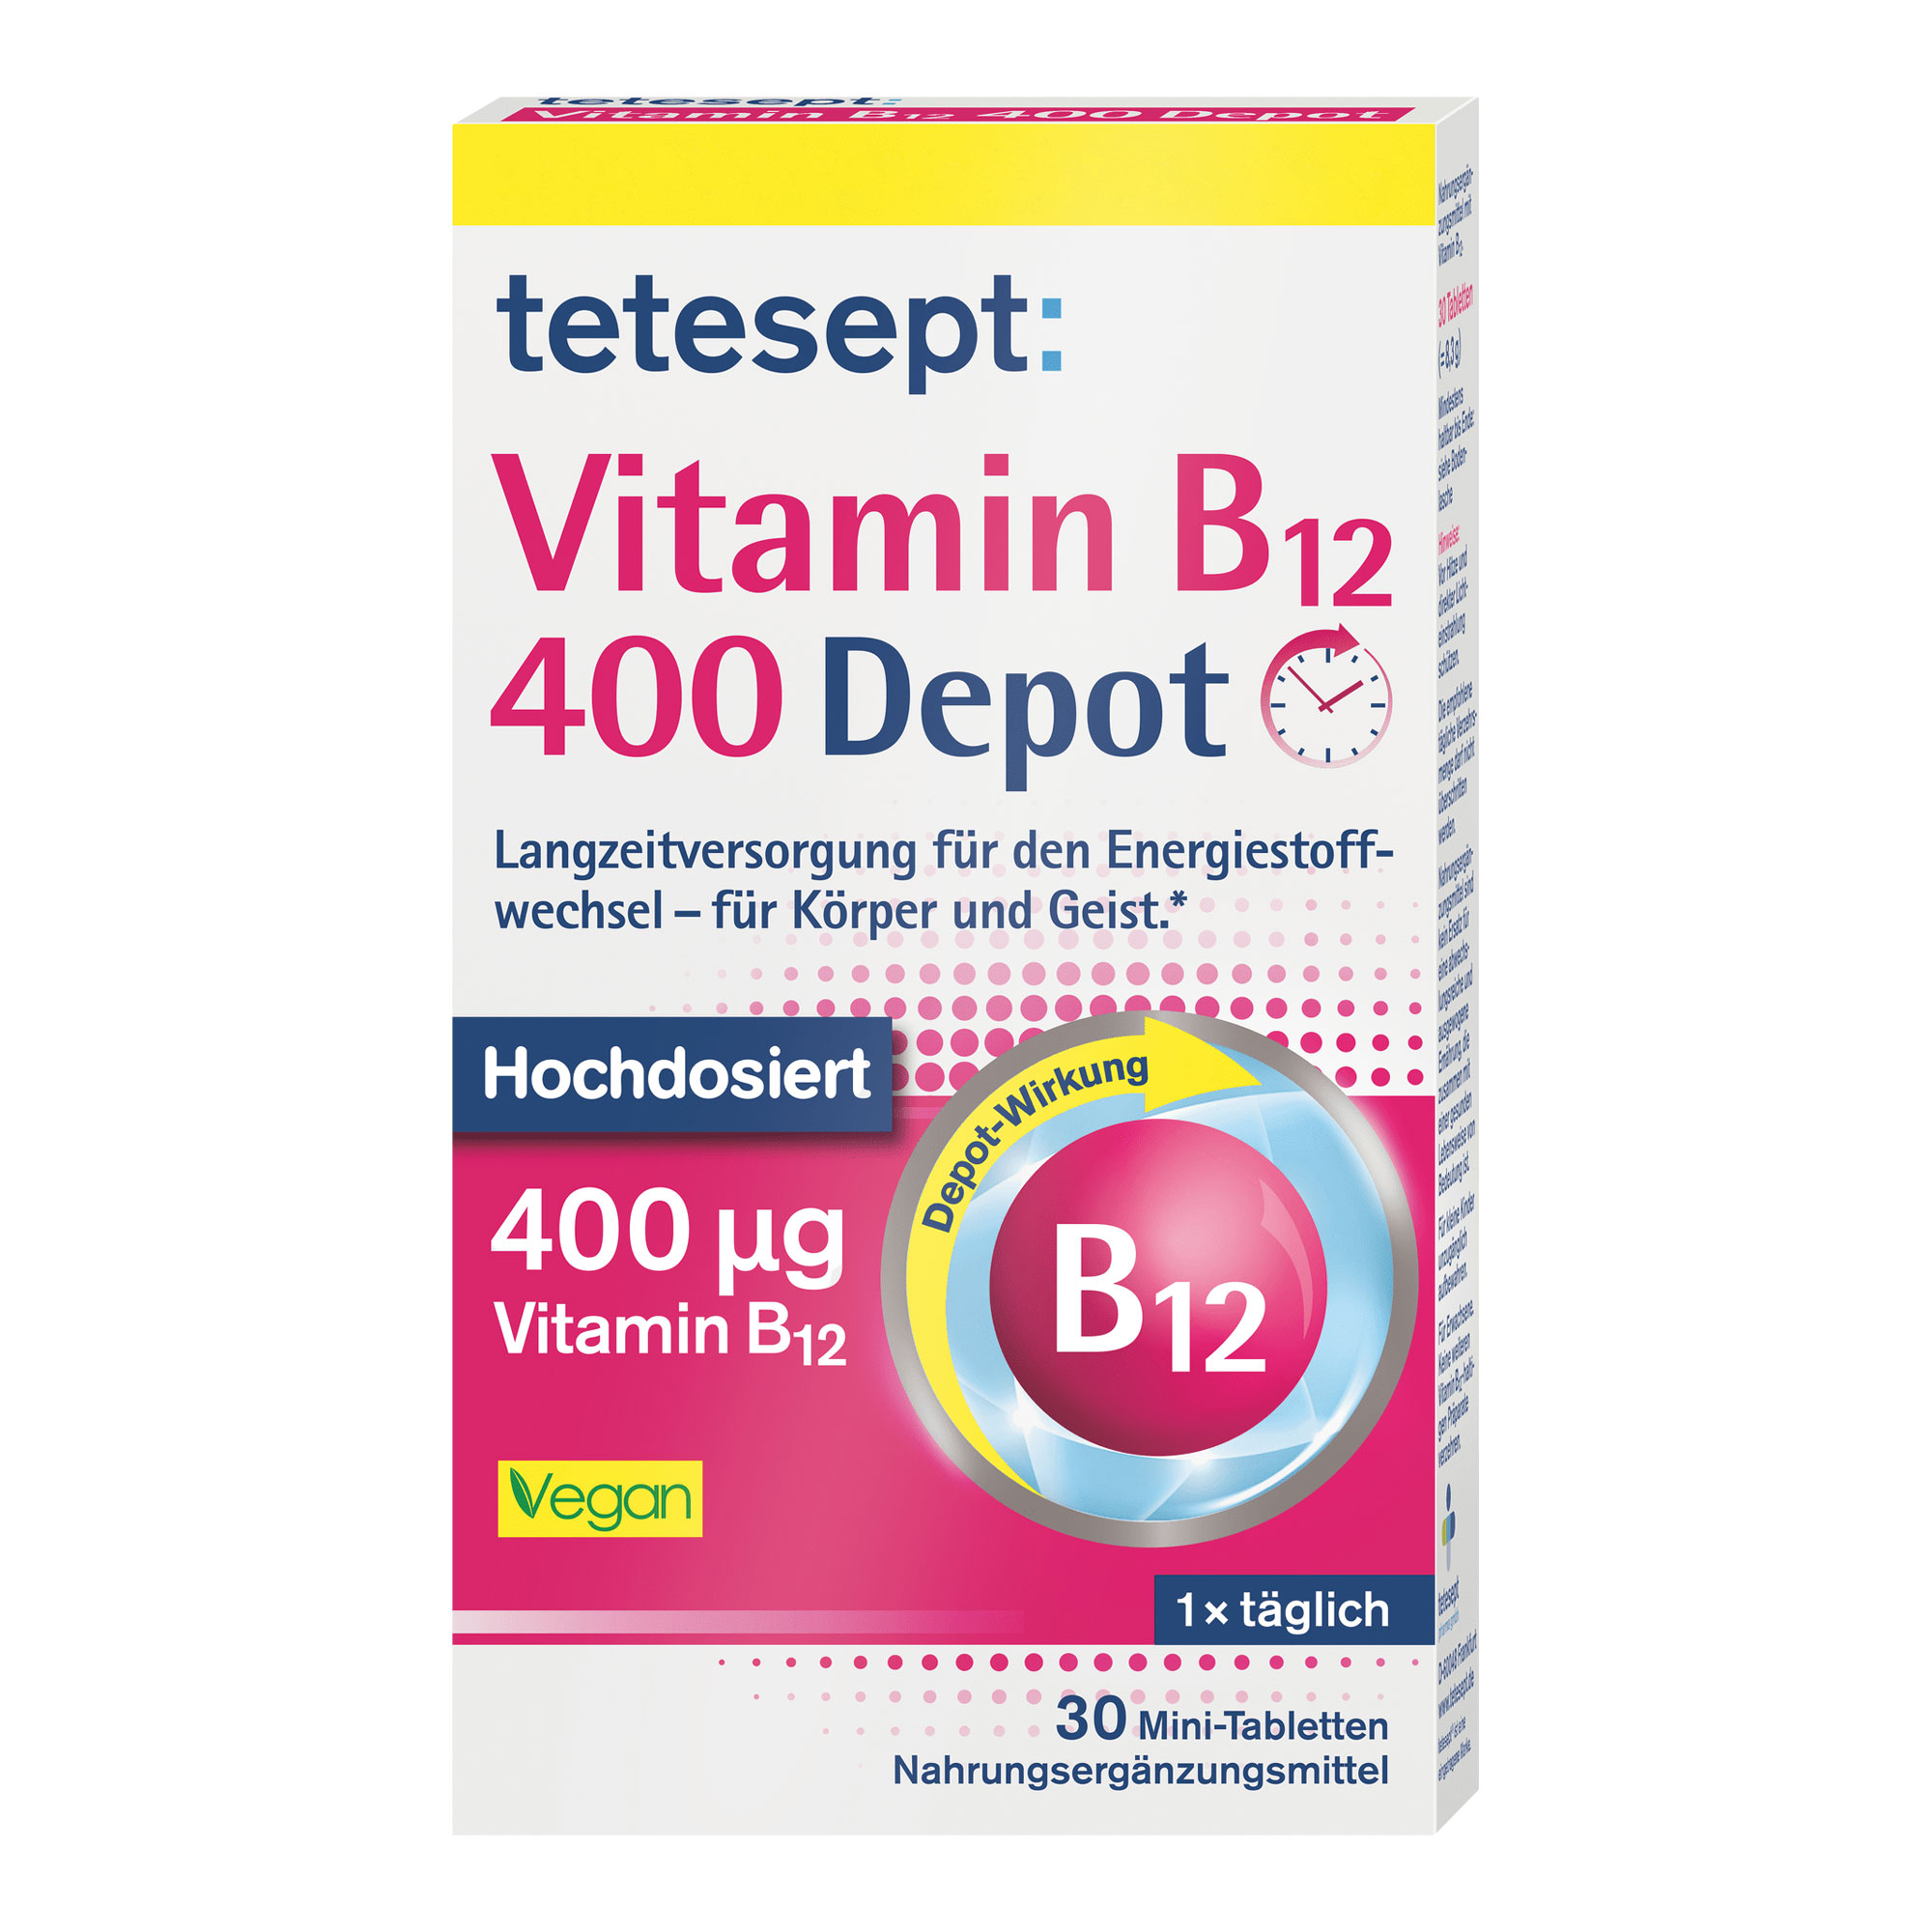 Nahrungsergänzungsmittel mit hochdosiertem Vitamin B12 zur Langzeitversorgung.